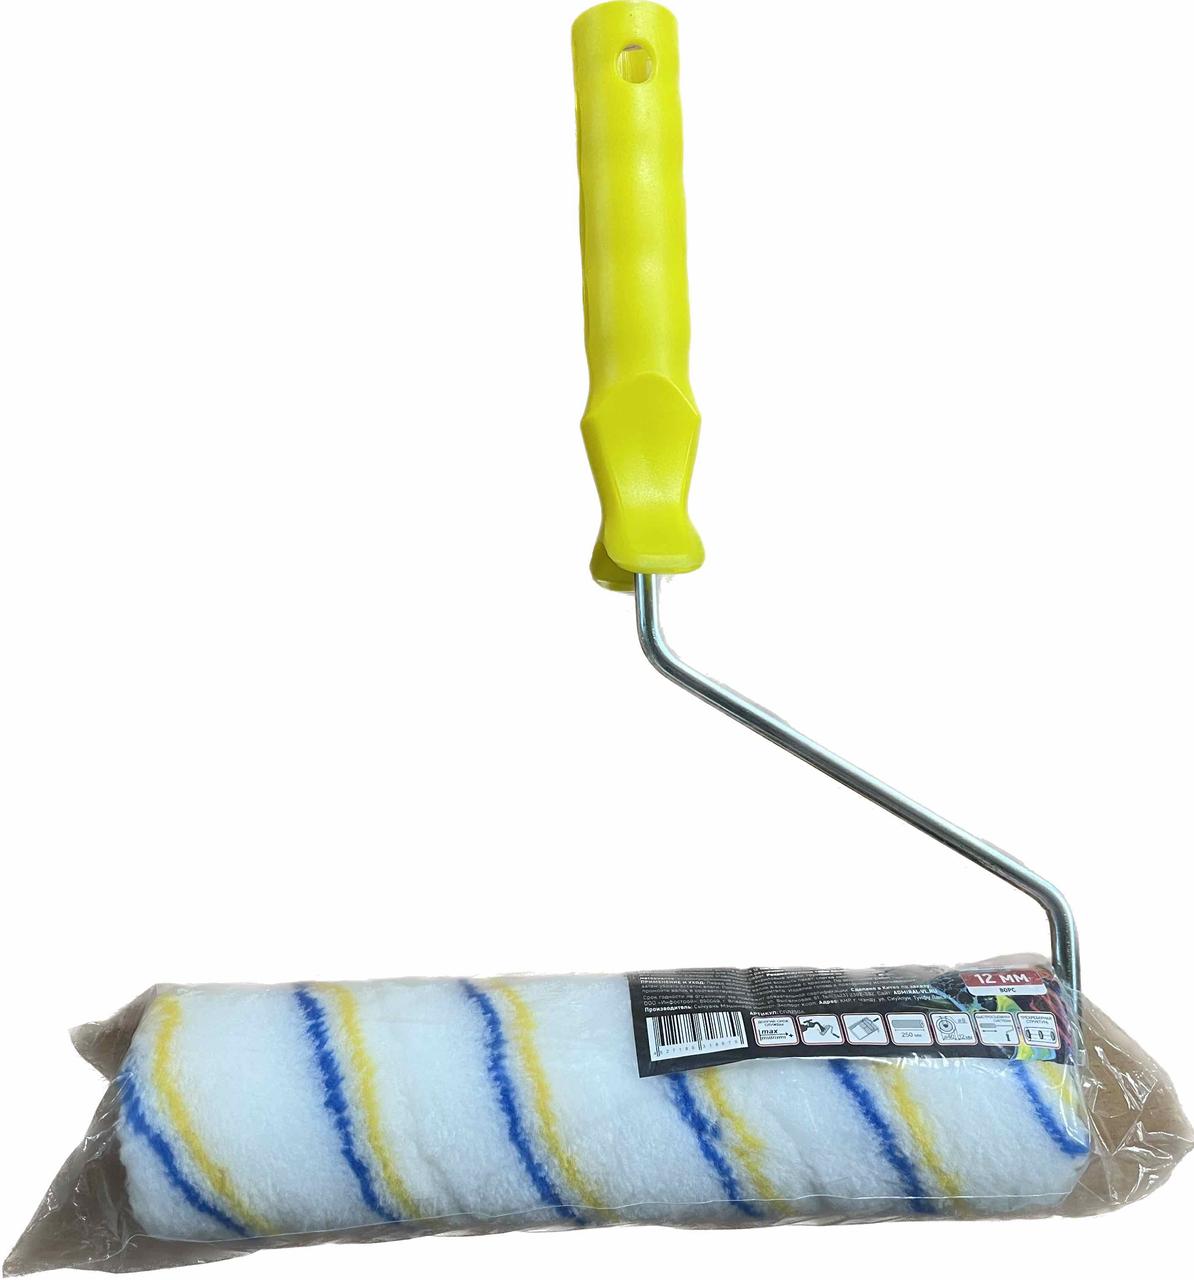 Валик полиакриловый 250мм АДМИРАЛ COLORS ФАСАД  (желтая ручка) бюгель 8мм, ворс 18мм